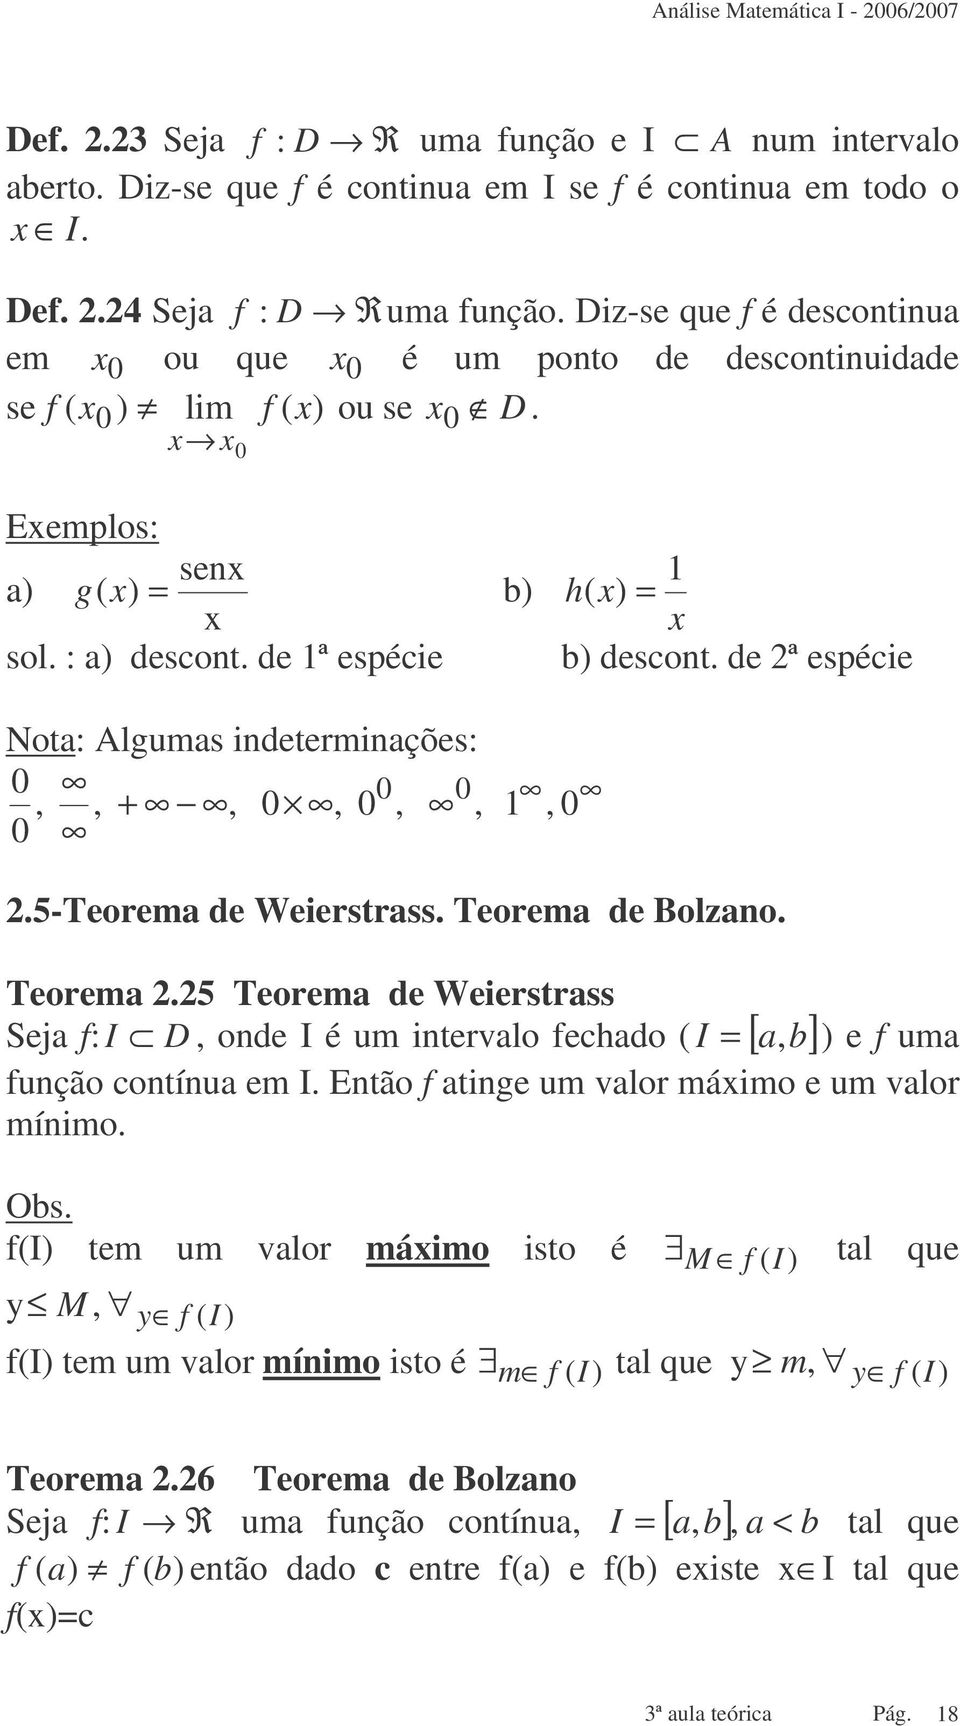 5-teorem de Weierstrss. Teorem de Bolzno. Teorem.5 Teorem de Weierstrss Sej : I D, onde I é um intervlo ecdo I [, b] e um unção contínu em I. Então tine um vlor máimo e um vlor mínimo.